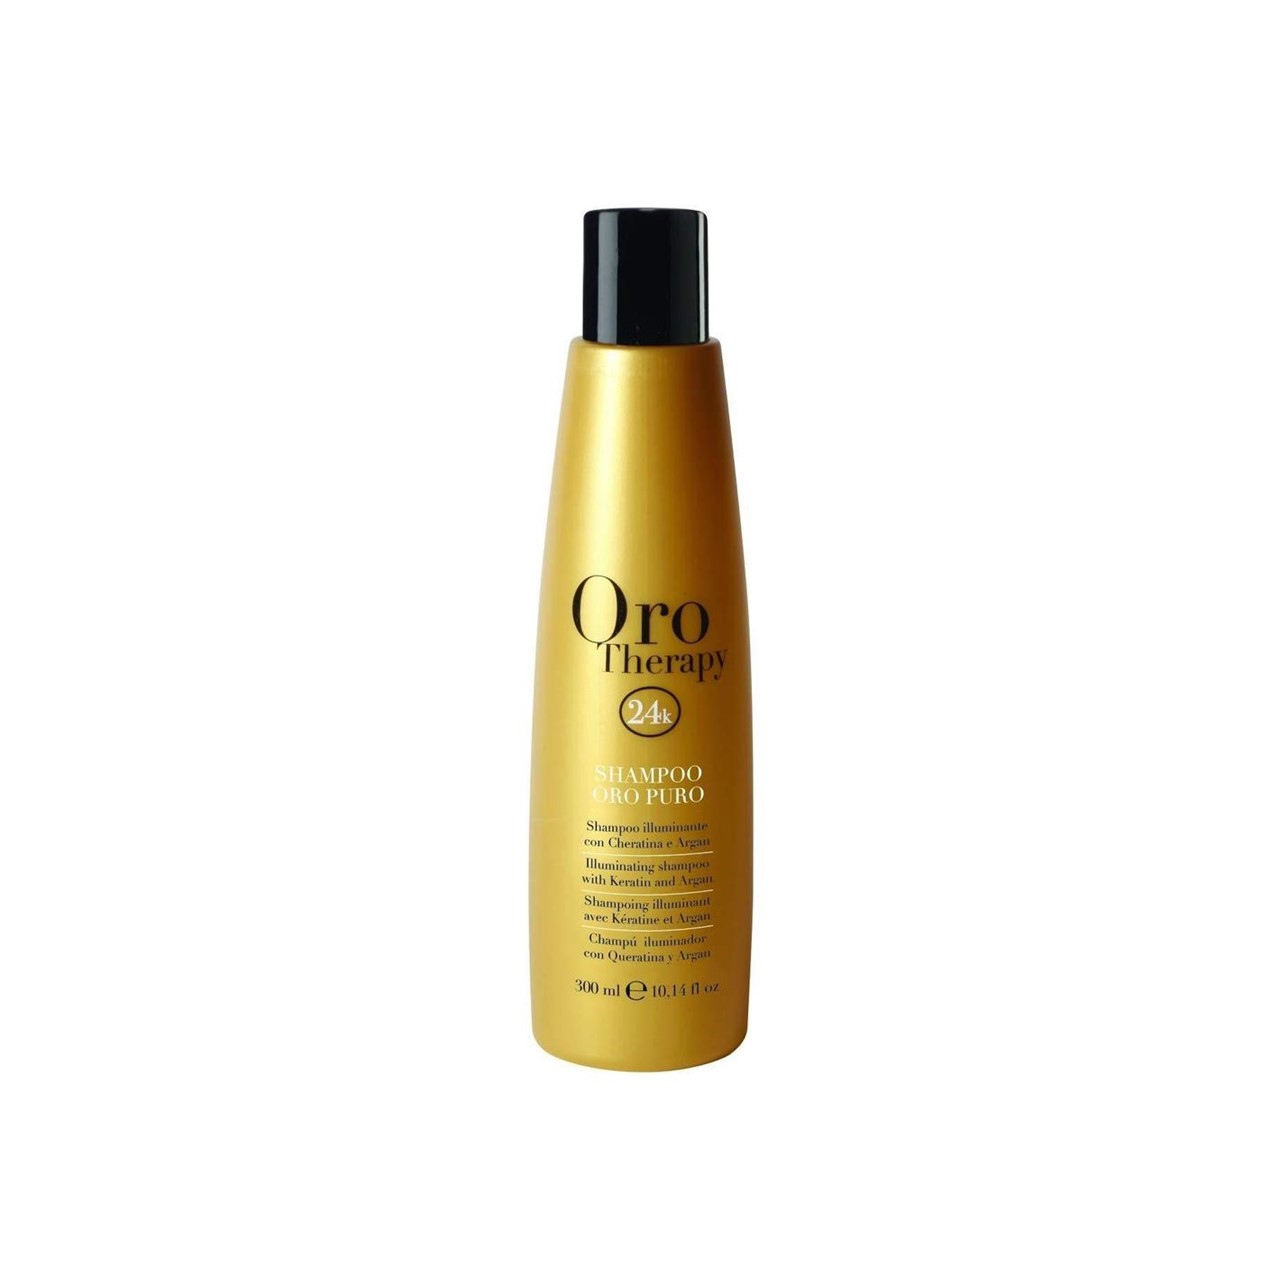 Fanola Oro Therapy 24k Oro Puro Illuminating Shampoo 300ml (10.14 fl oz)